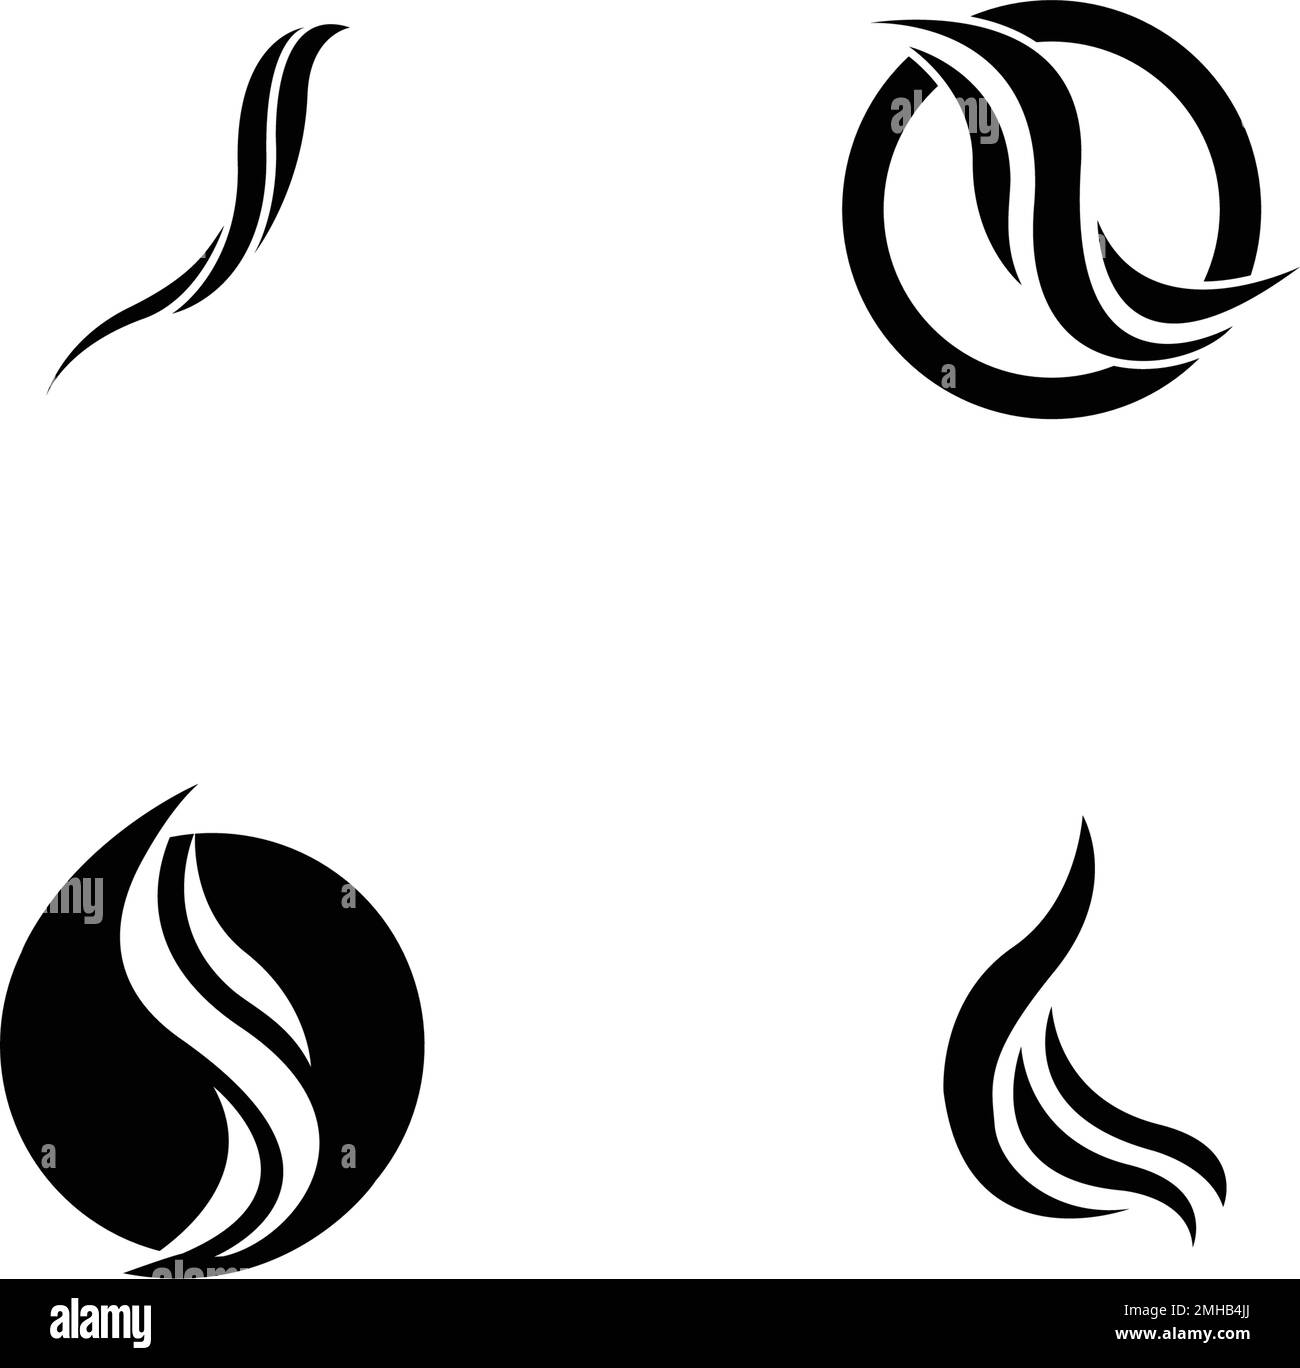 hair logo stock illustration design Stock Vector